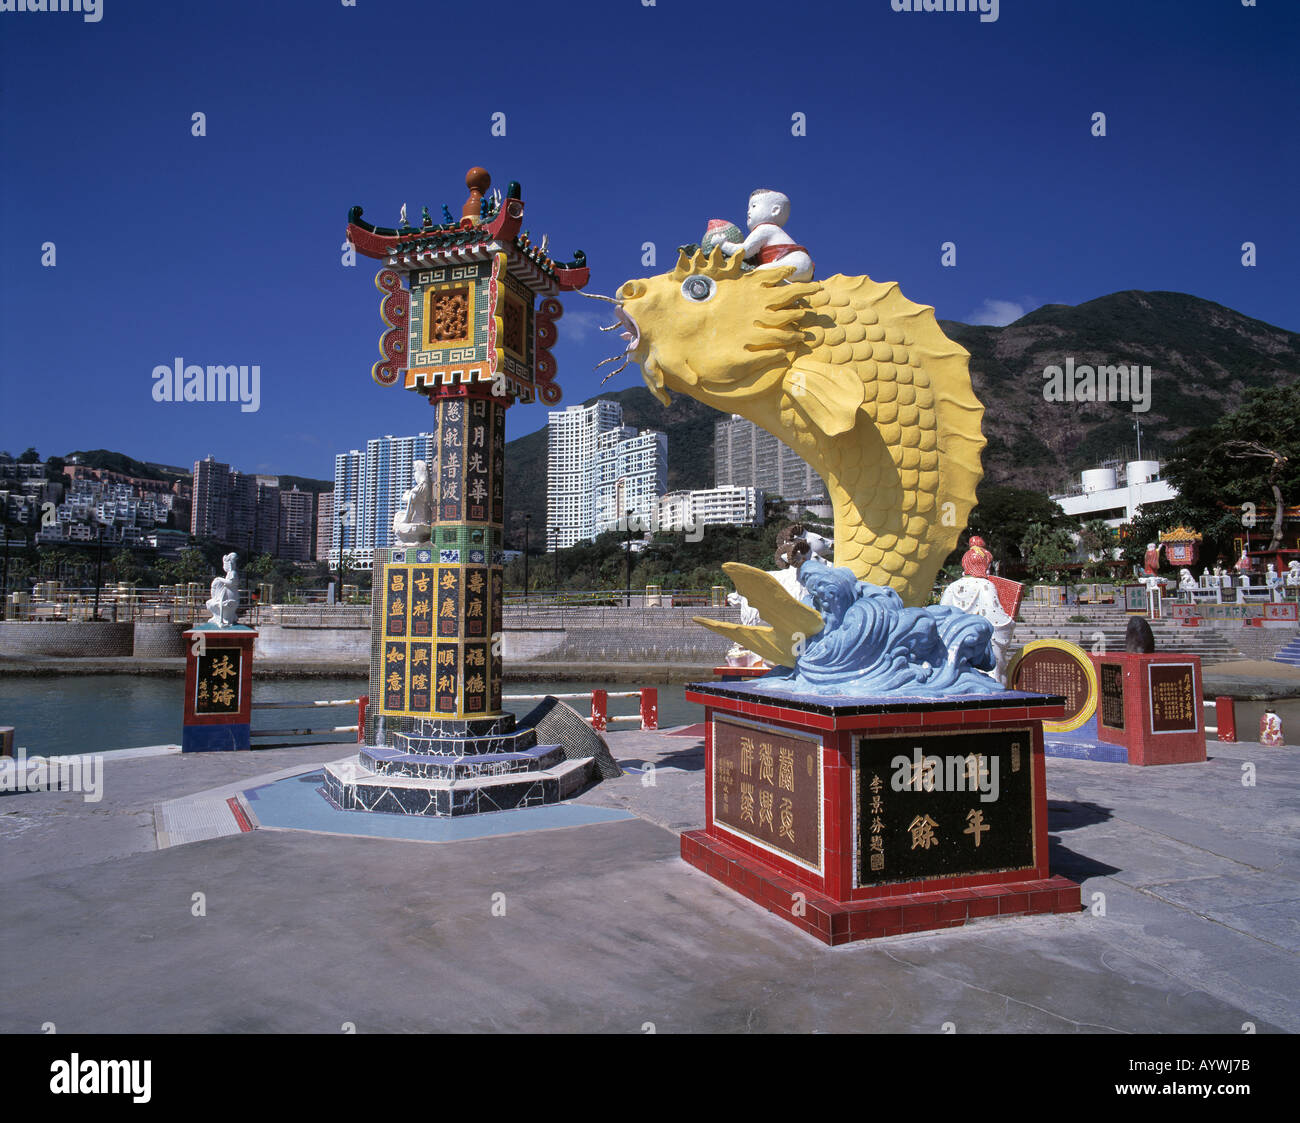 Bunter Tin-Hau-Tempel, Skulpturen, Statuen, Repulse Bay, Hong Kong Insel, Hongkong Foto Stock